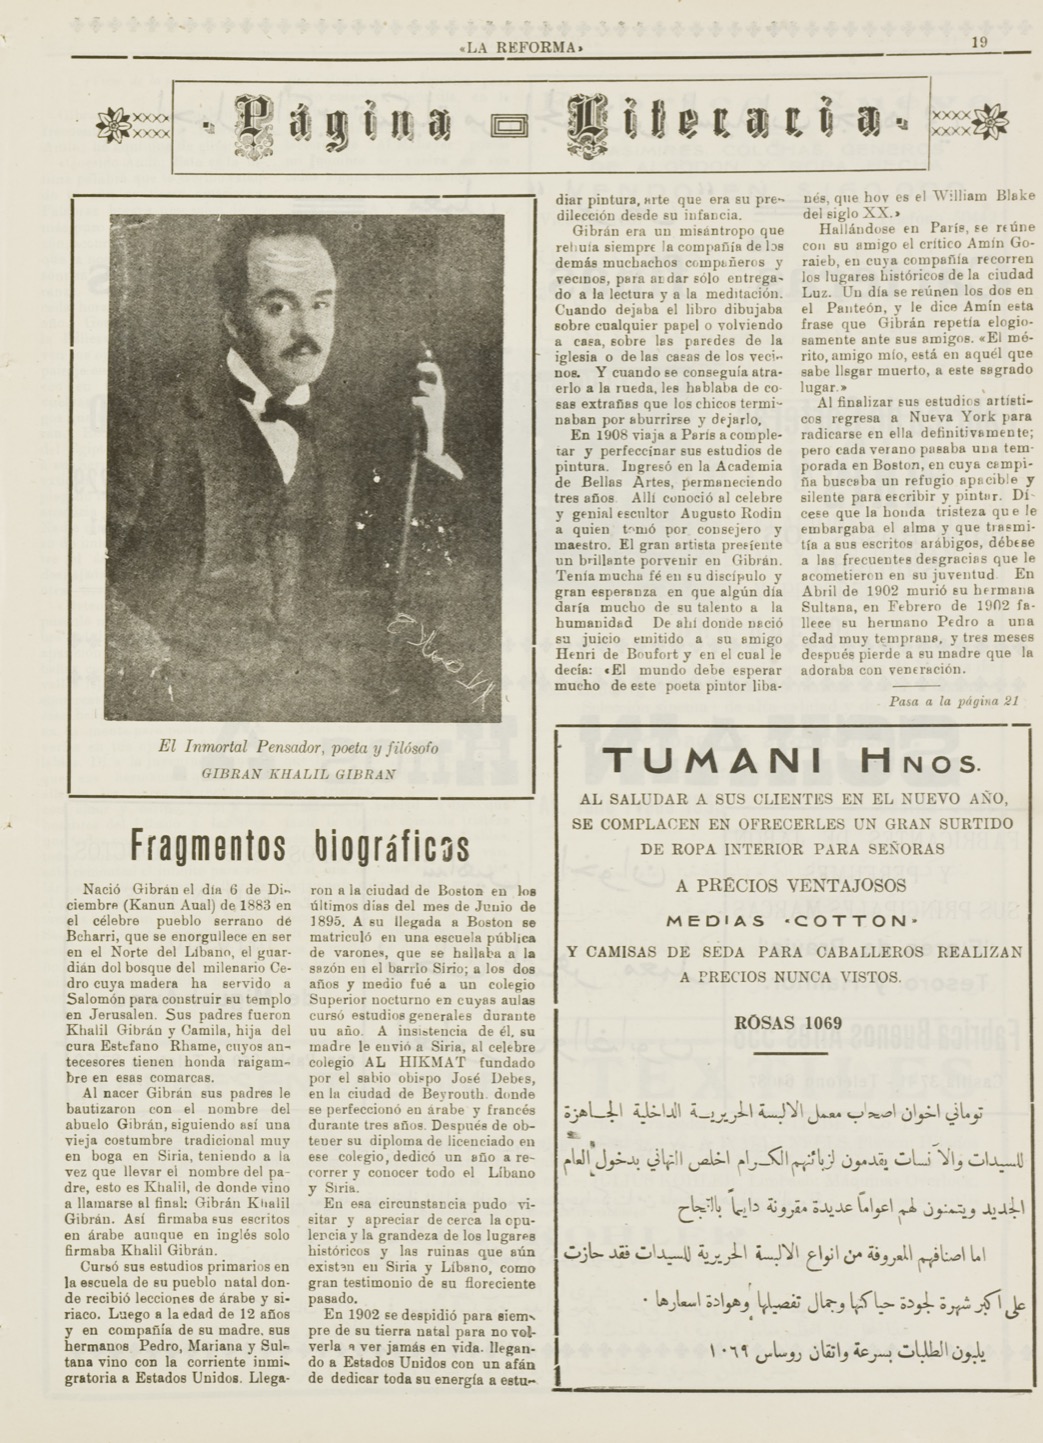 "Gibran Khalil Gibran: Fragmentos Biográficos", La Reforma, Jan 1, 1938, p. 15.